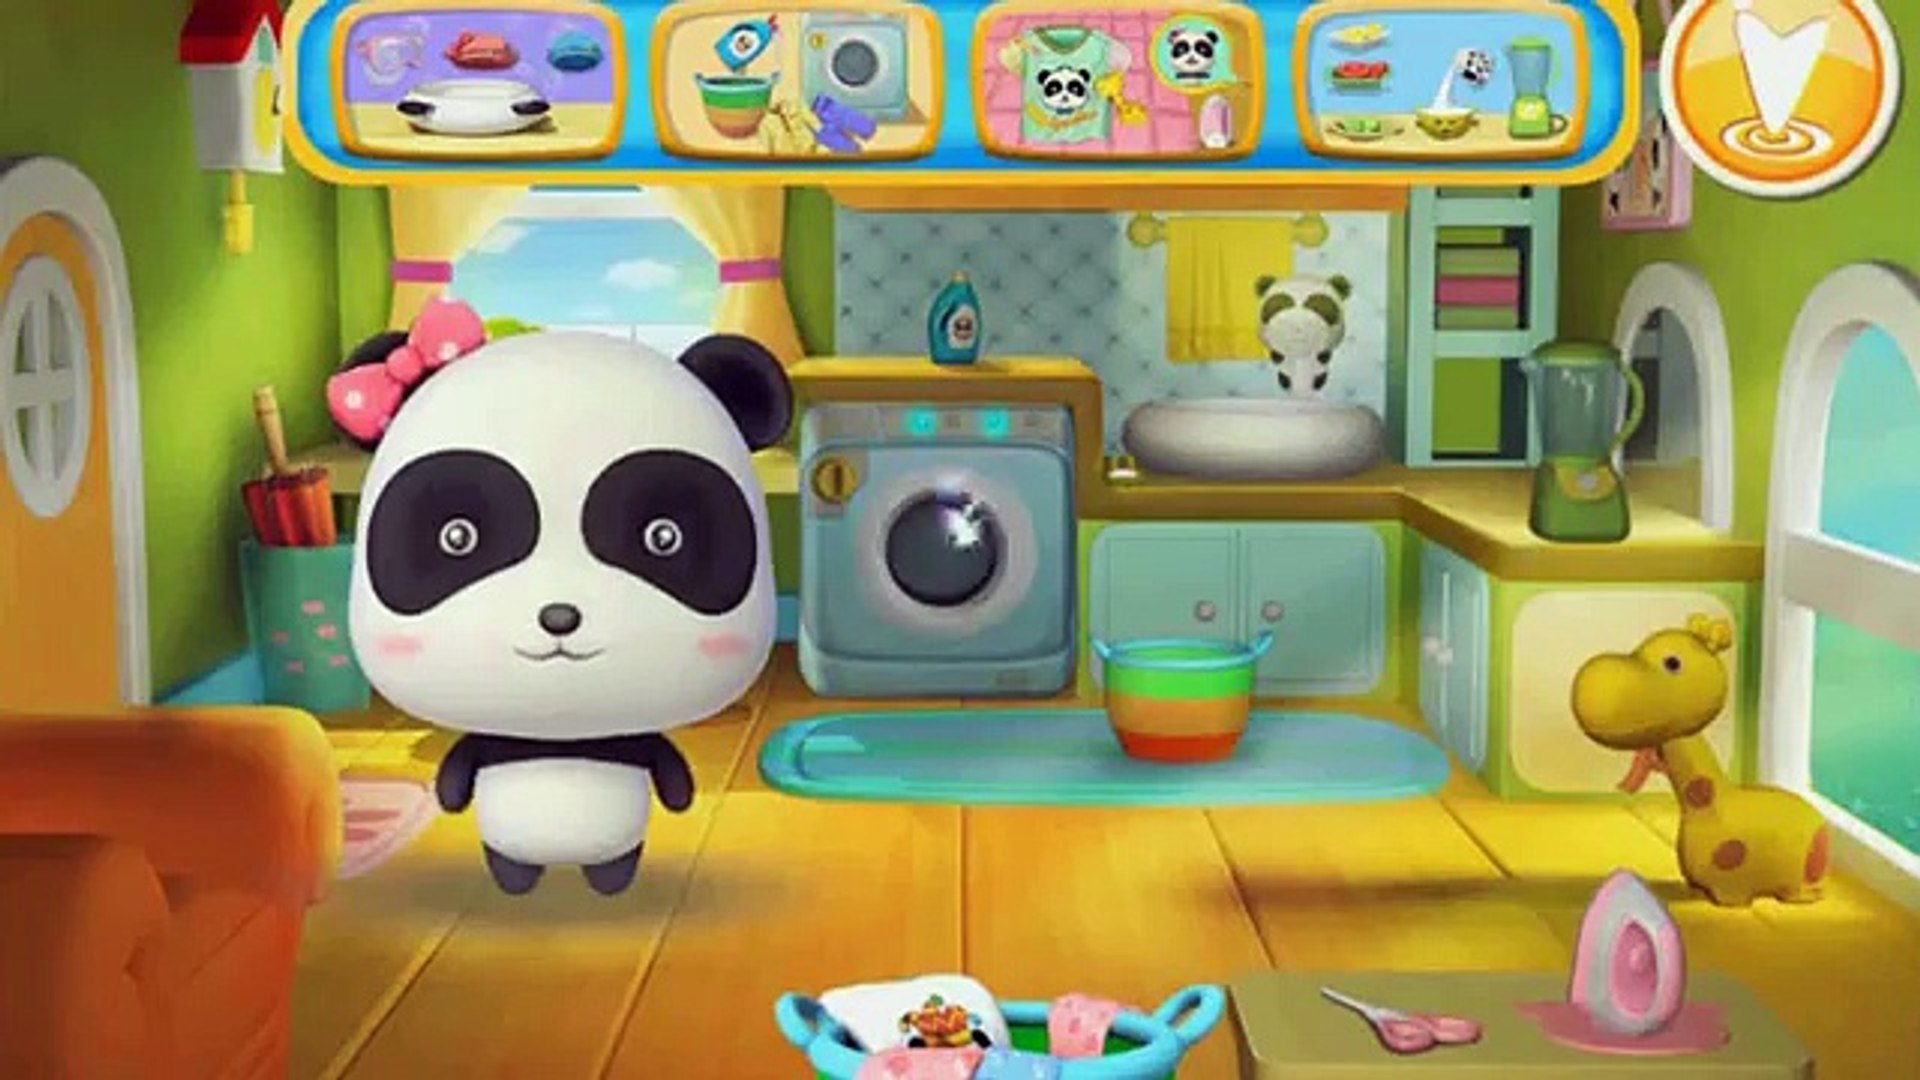 Giorno di bucato , Cartoni animati educativi per bambini piccoli da 2 anni  - video Dailymotion